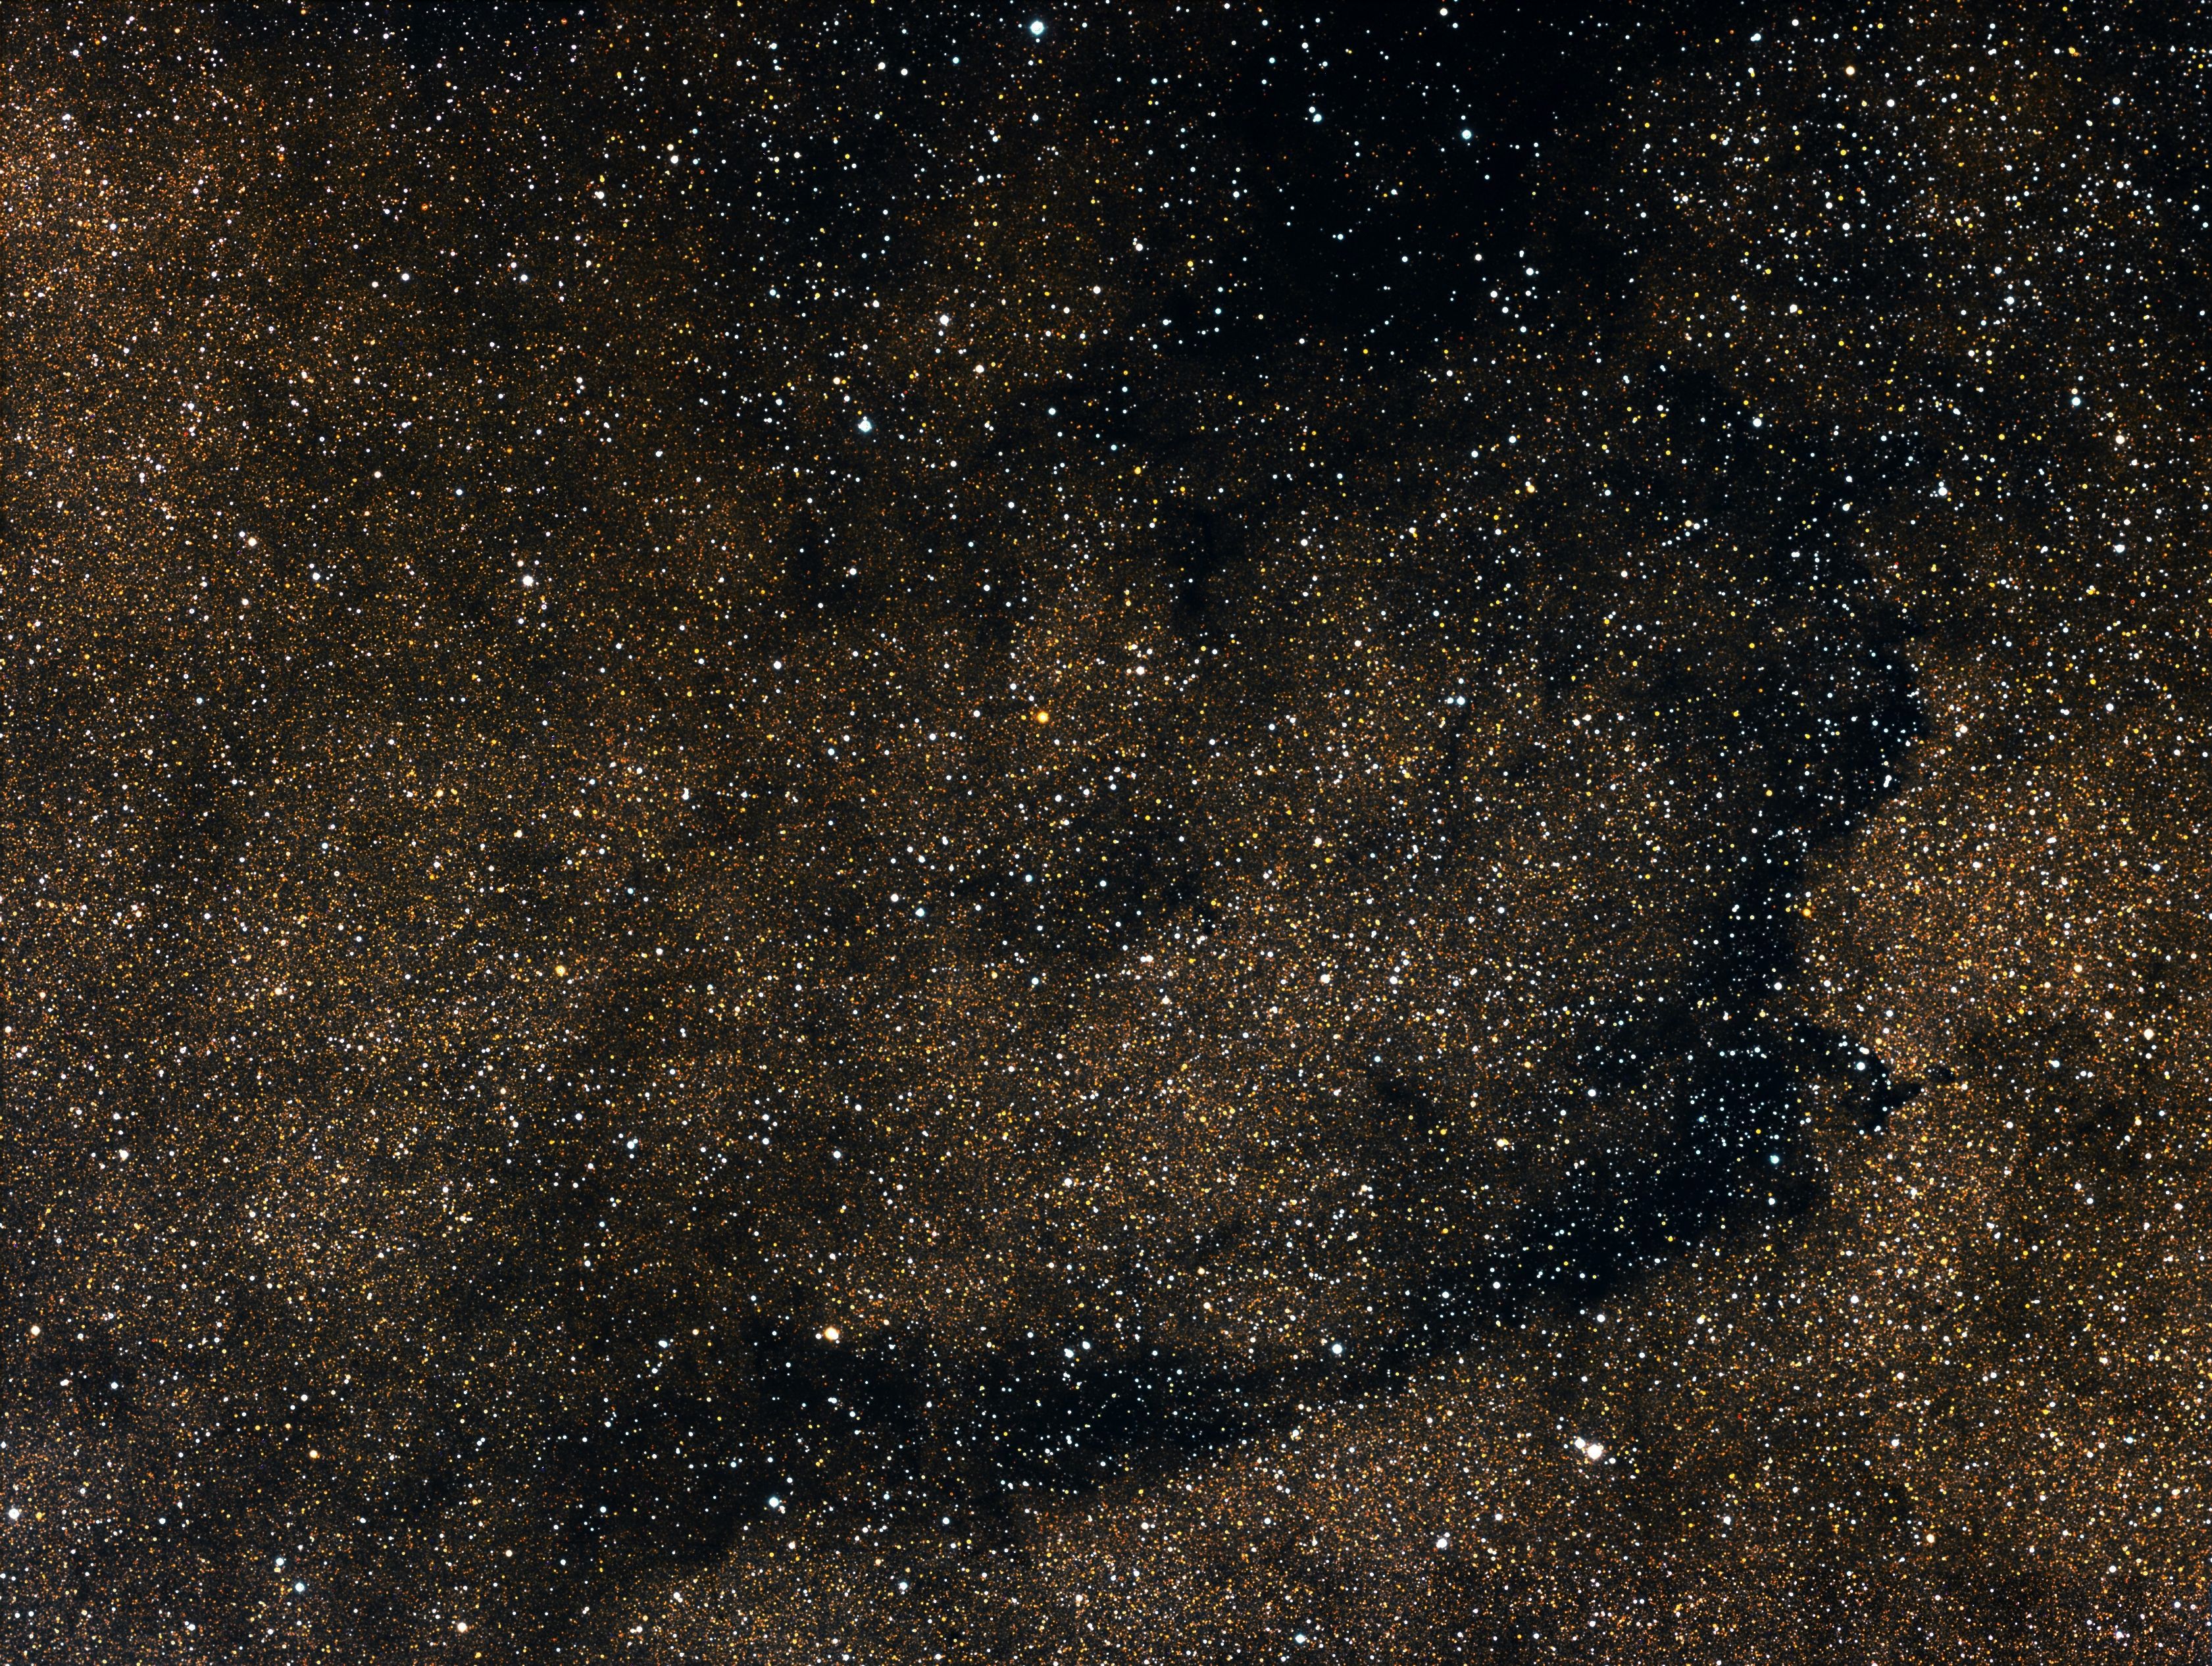 B283 dark nebula (The Lizard nebula)